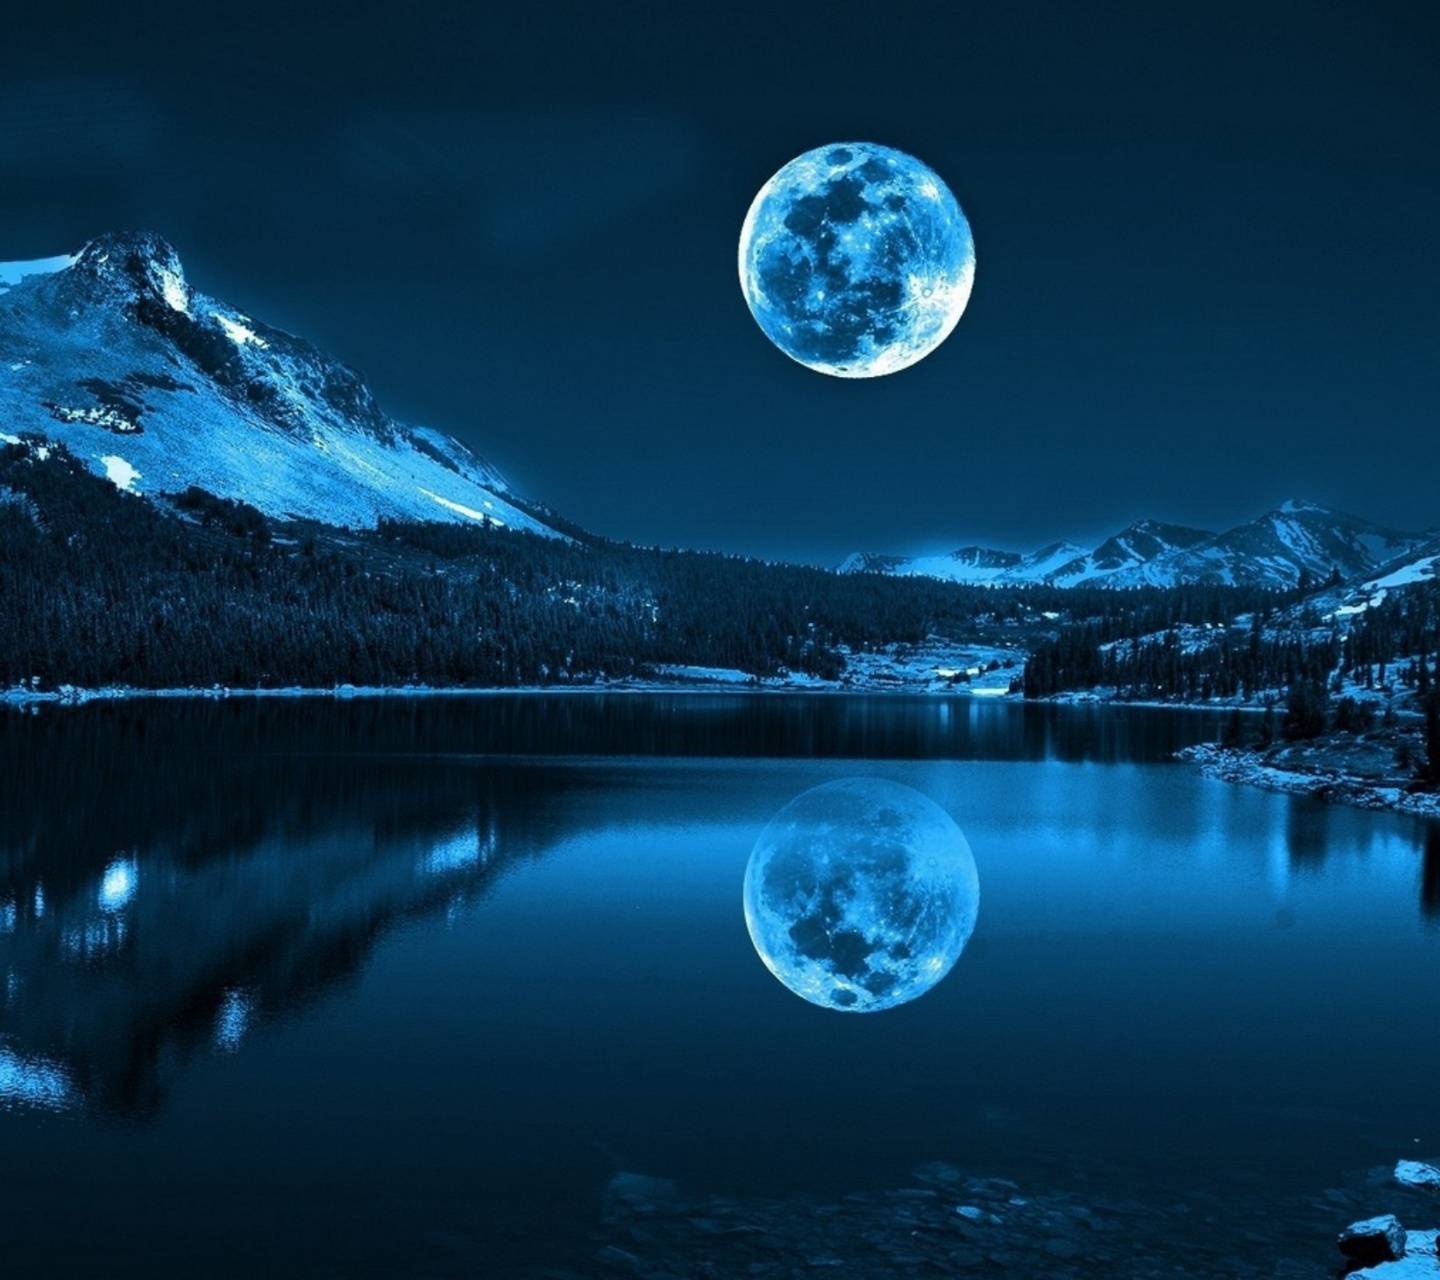 والپیپر کمپ زدن در کنار دریاچه های رویایی و زیبای جهان 